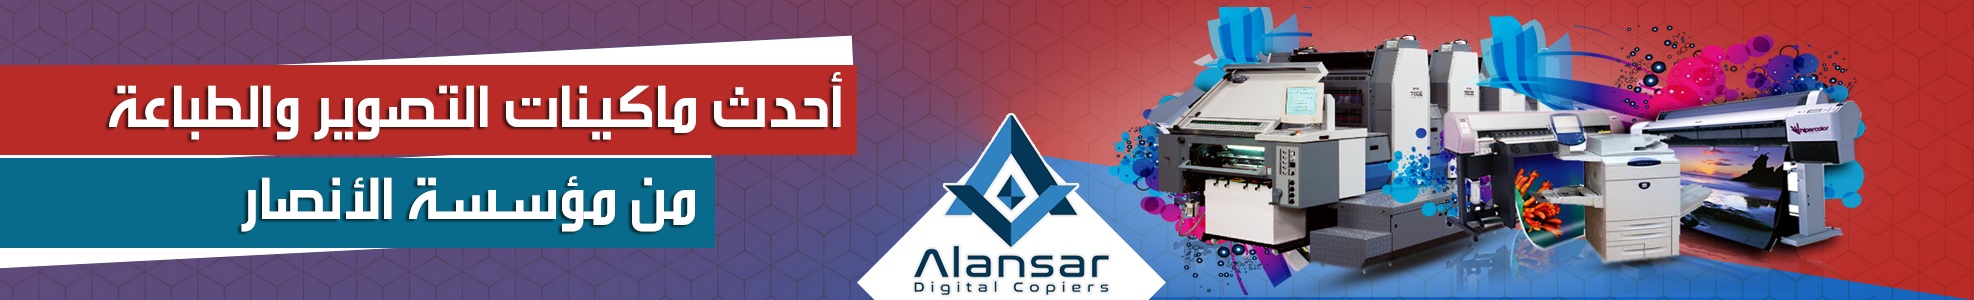 alansargroup.com: AlansarGroup Website for printing solutions